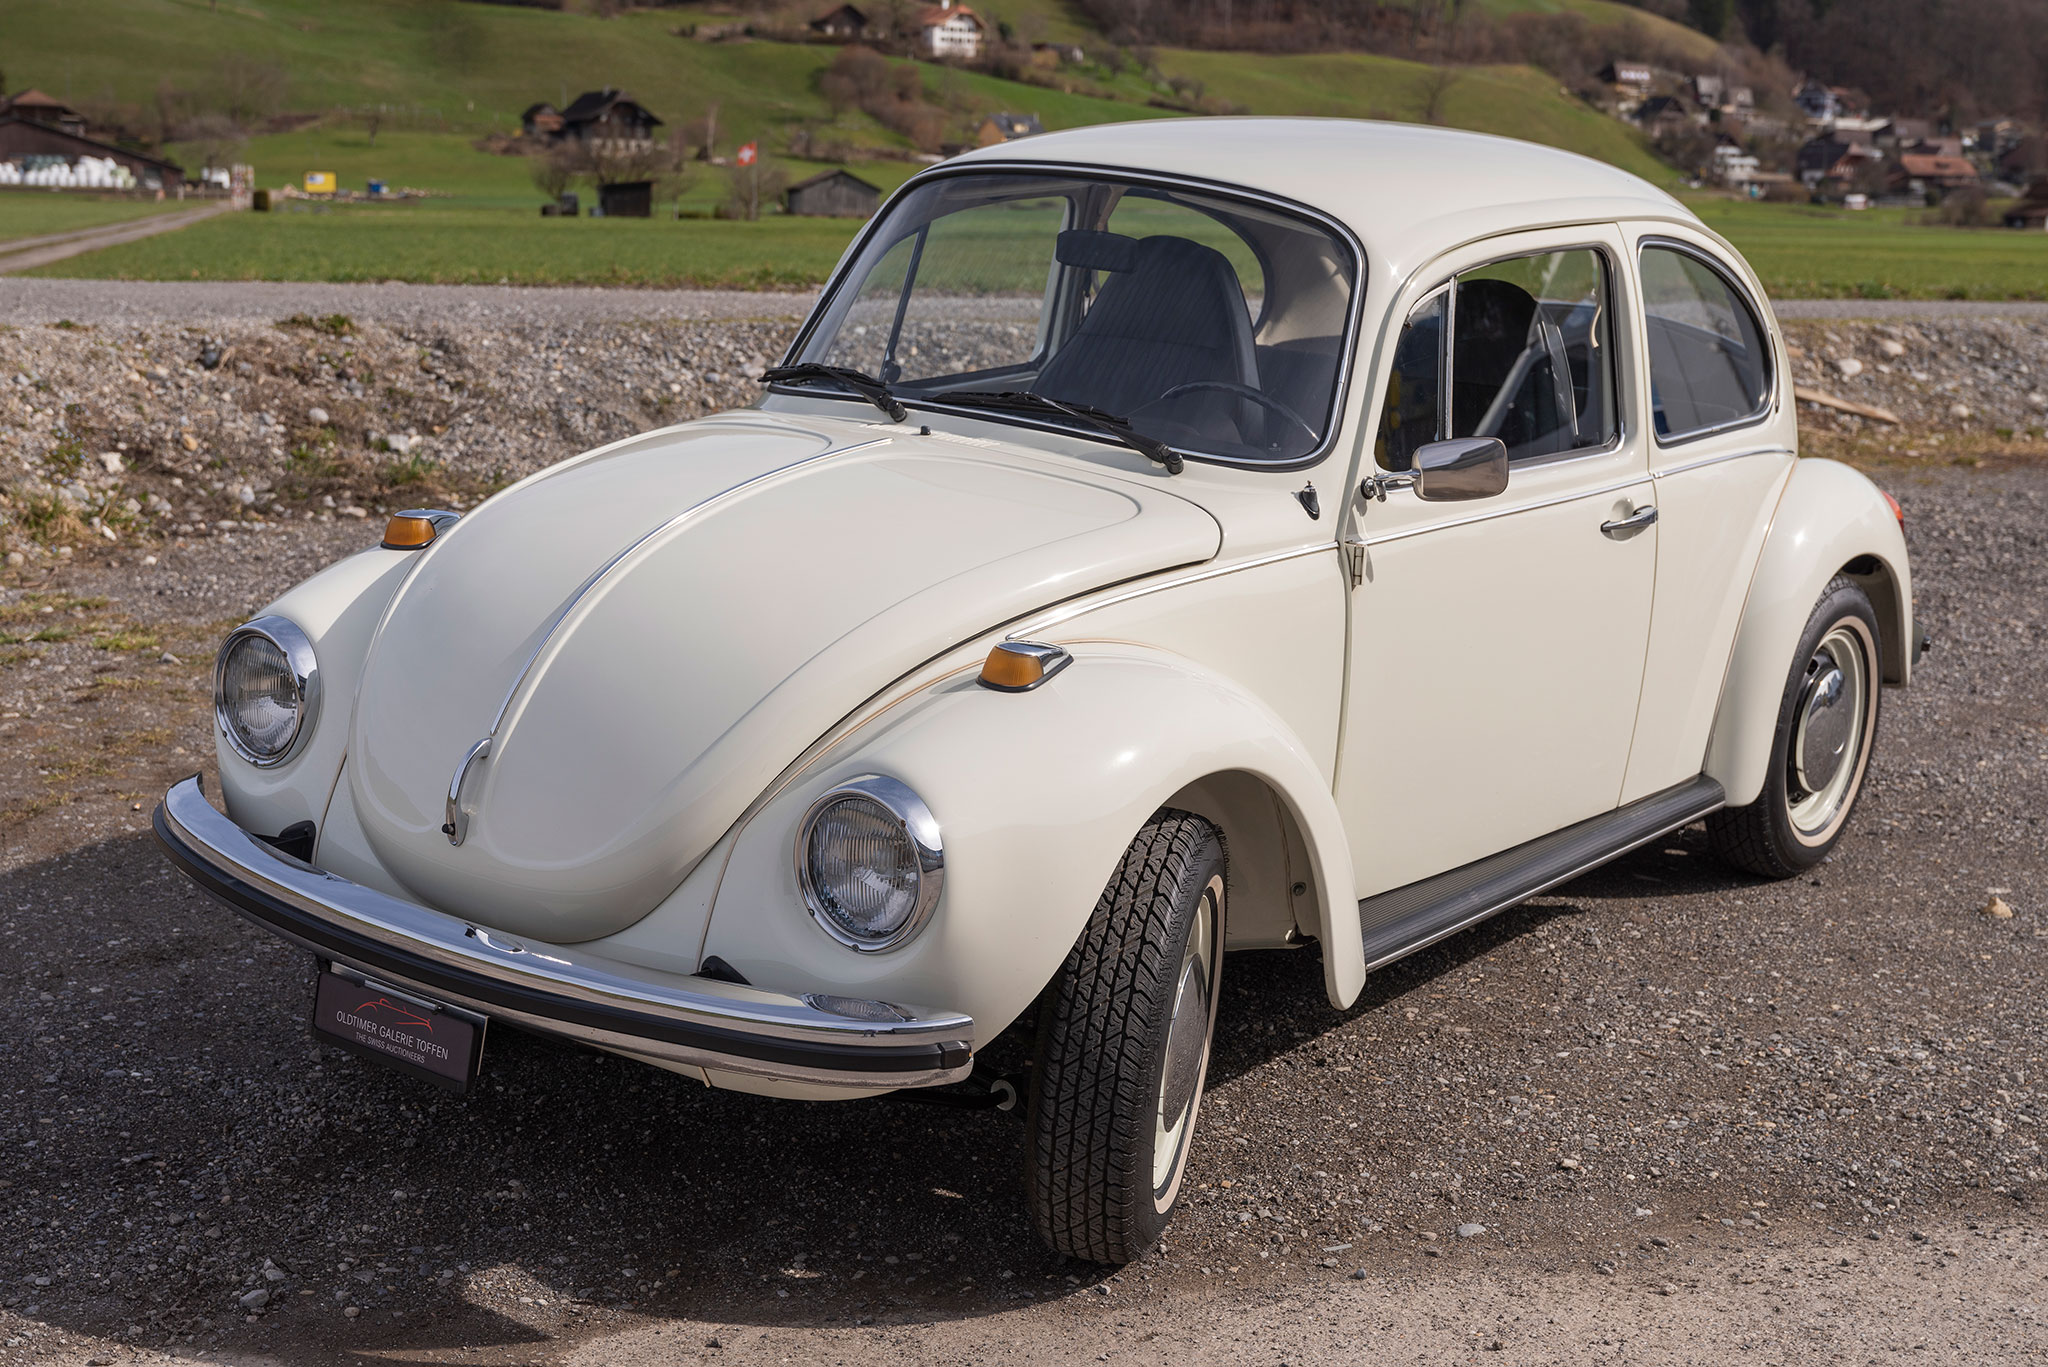 1973 Volkswagen Beetle 1303 – pour commencer sa collection quoi de plus naturel qu’une Coccinelle.